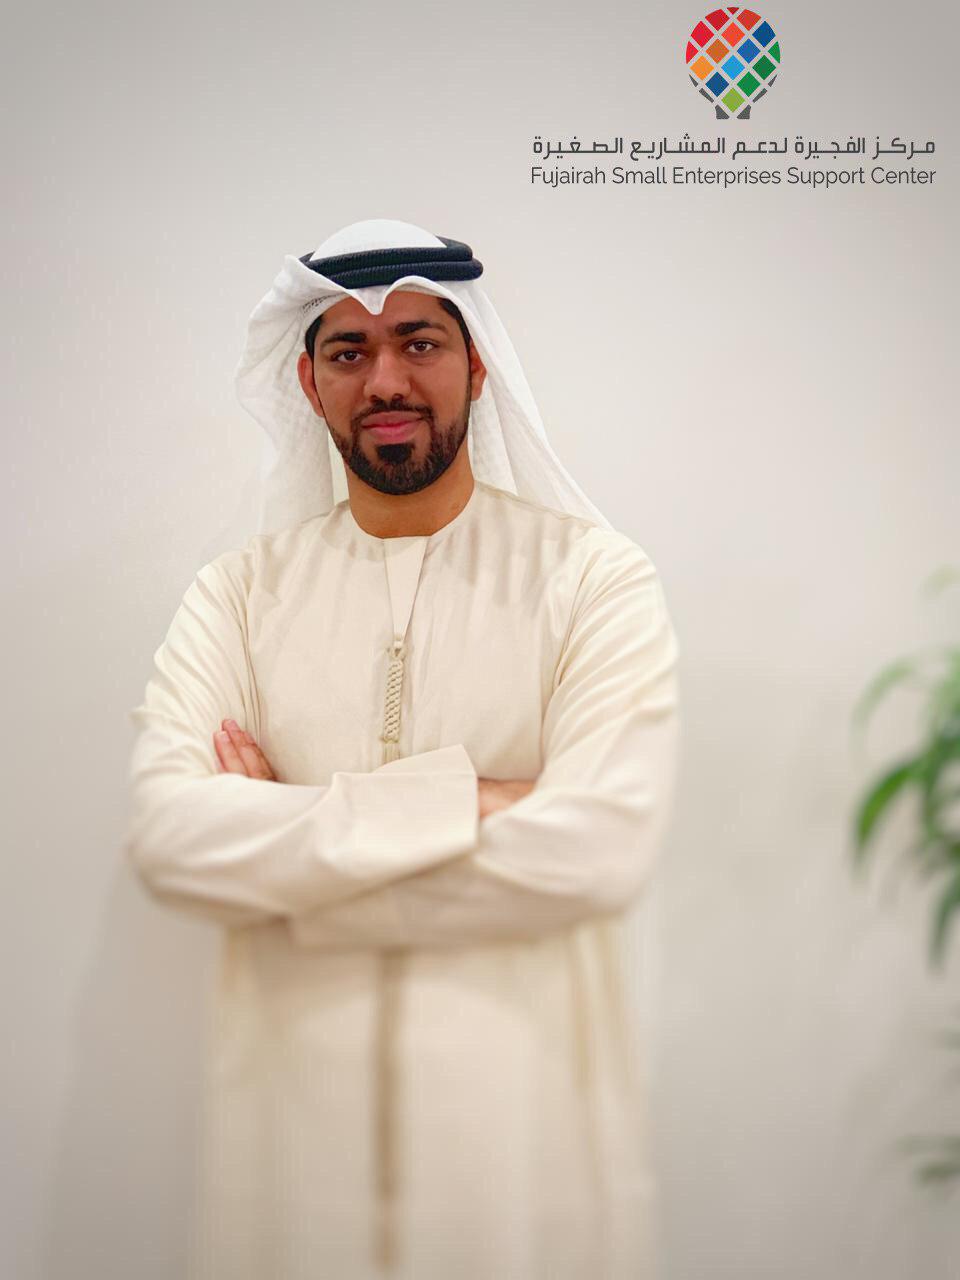  عبدالله خصيف رائد أعمال في مجال تخليص معاملات المشاريع الناشئة 